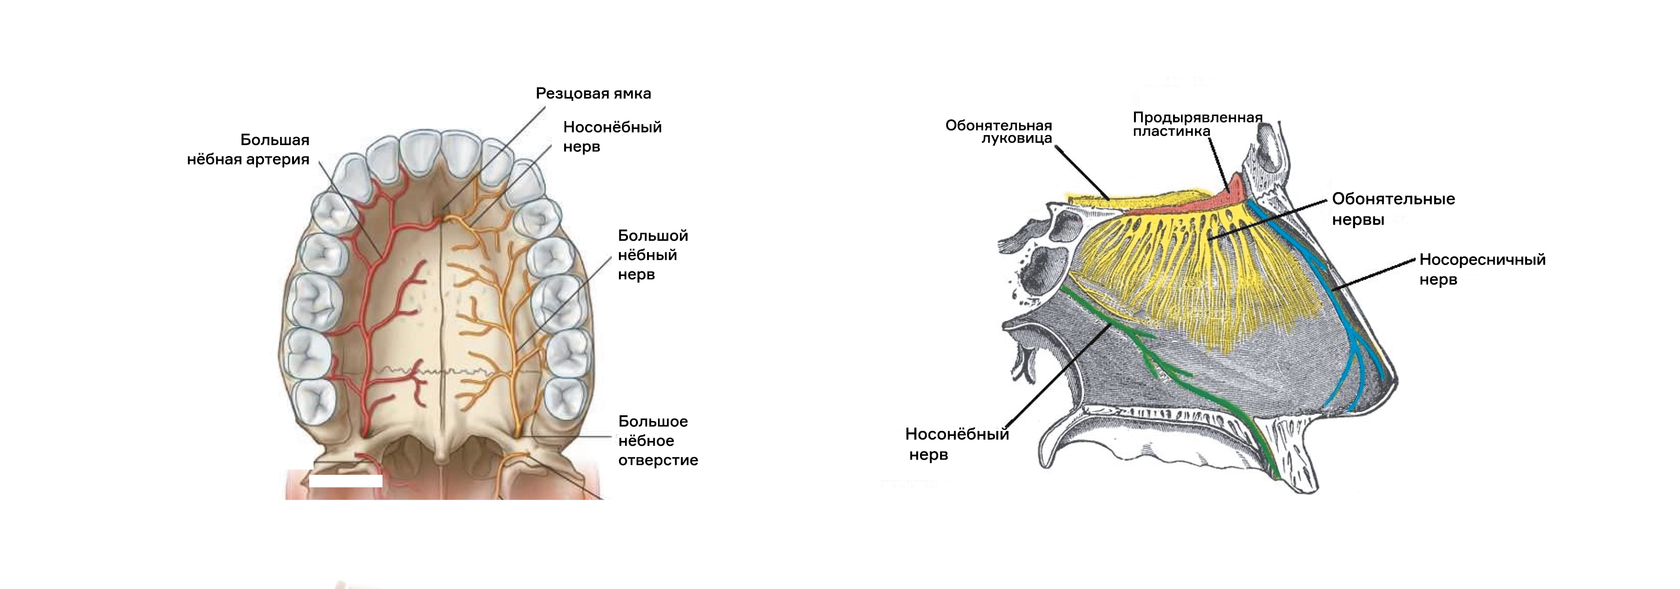 Резцовый канал верхней челюсти анатомия. Иннервация верхней челюсти нервы. Резцовый нерв верхней челюсти. Небный отросток верхней челюсти анатомия. Верхняя расширенная часть